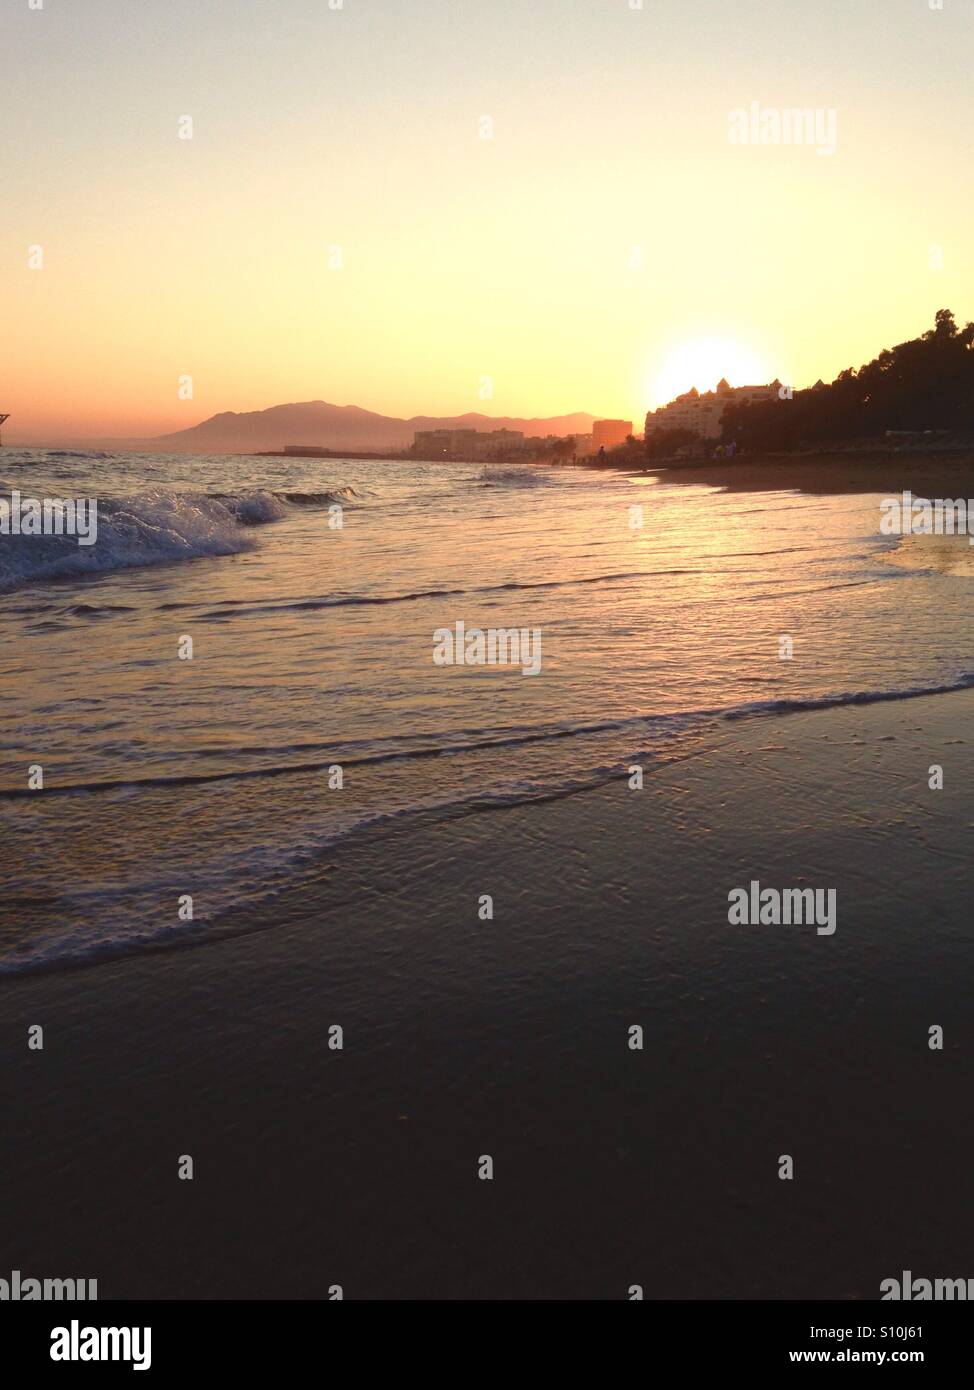 Marbella sunset Stock Photo